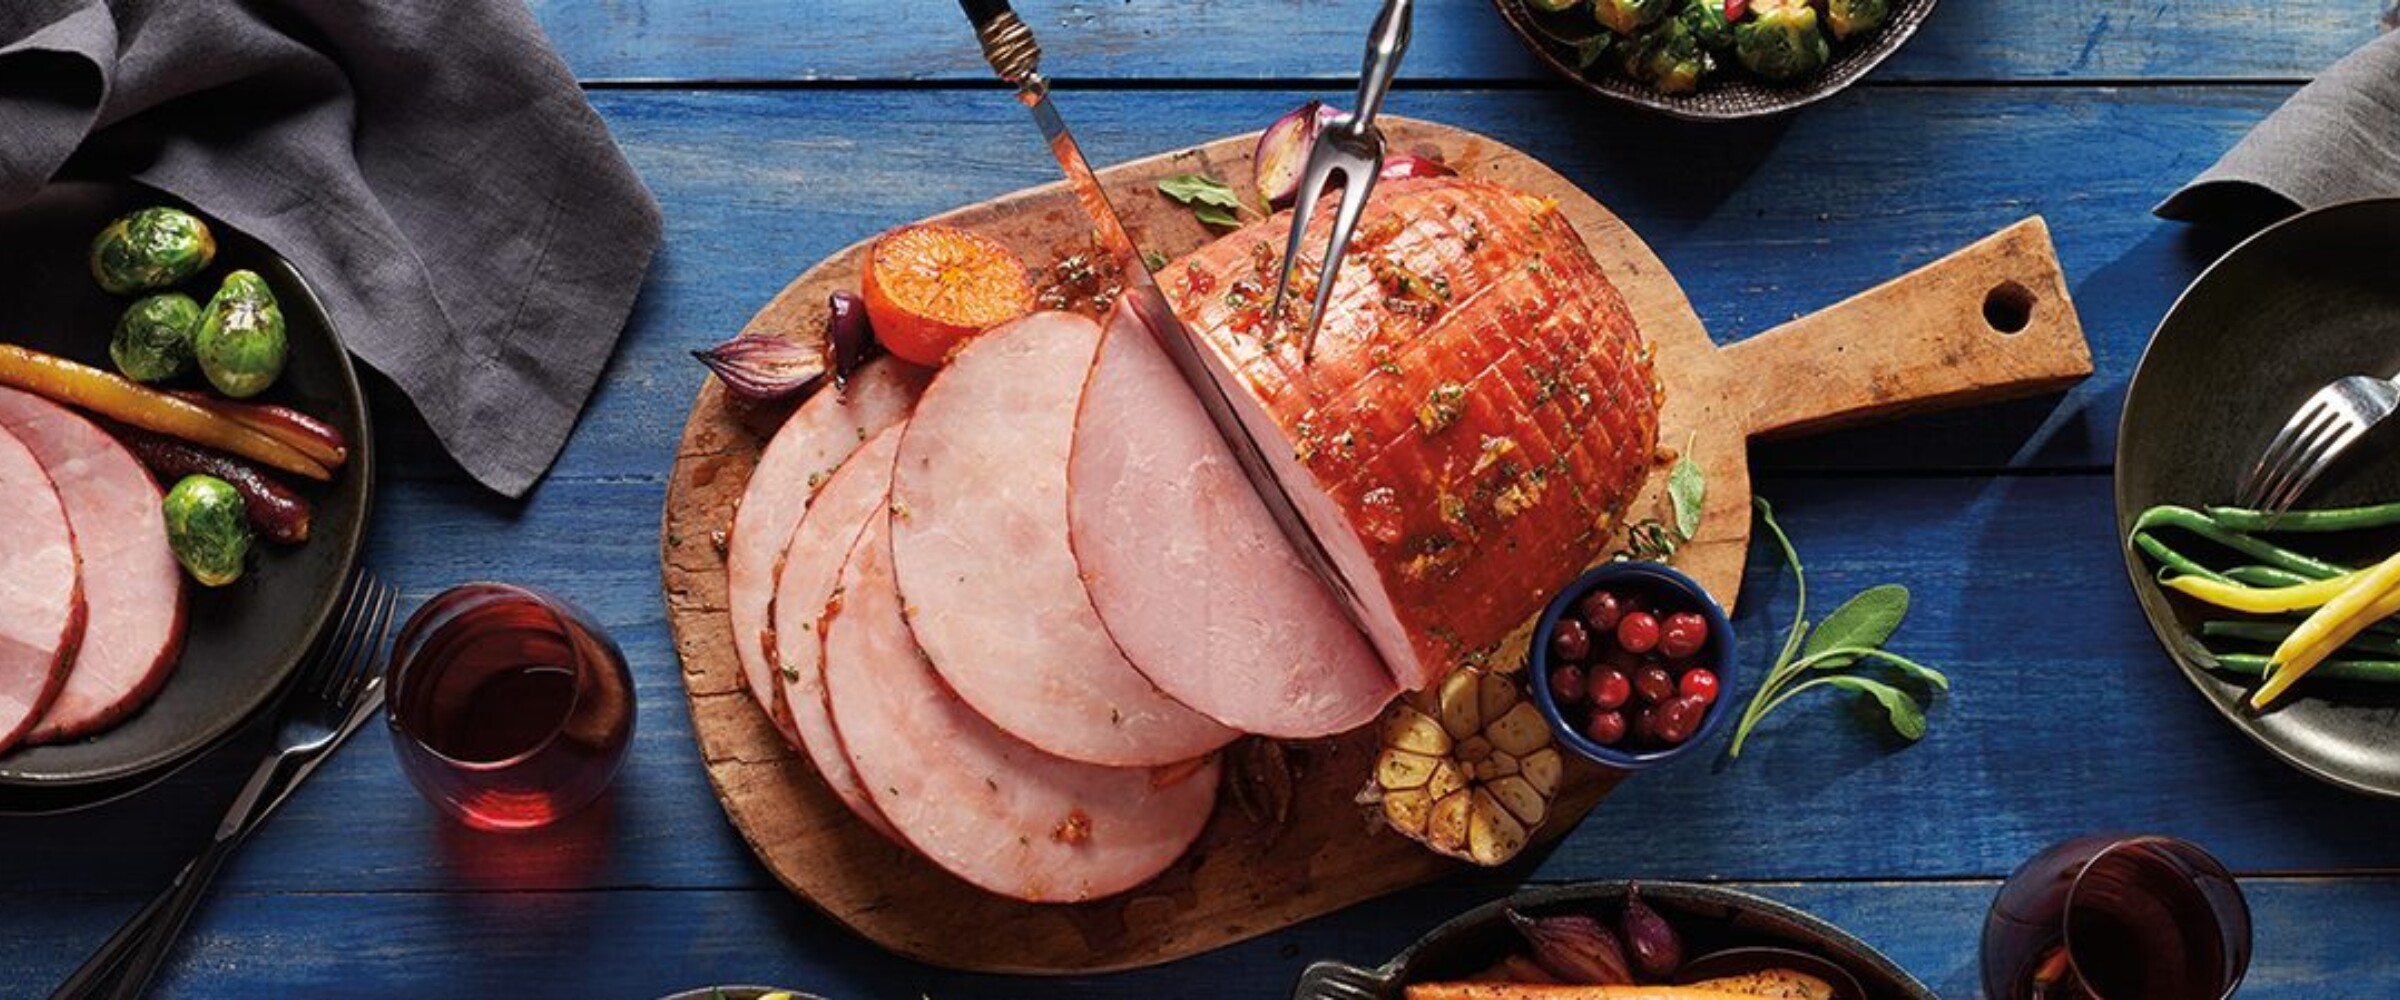 Photo of glazed ham sliced up